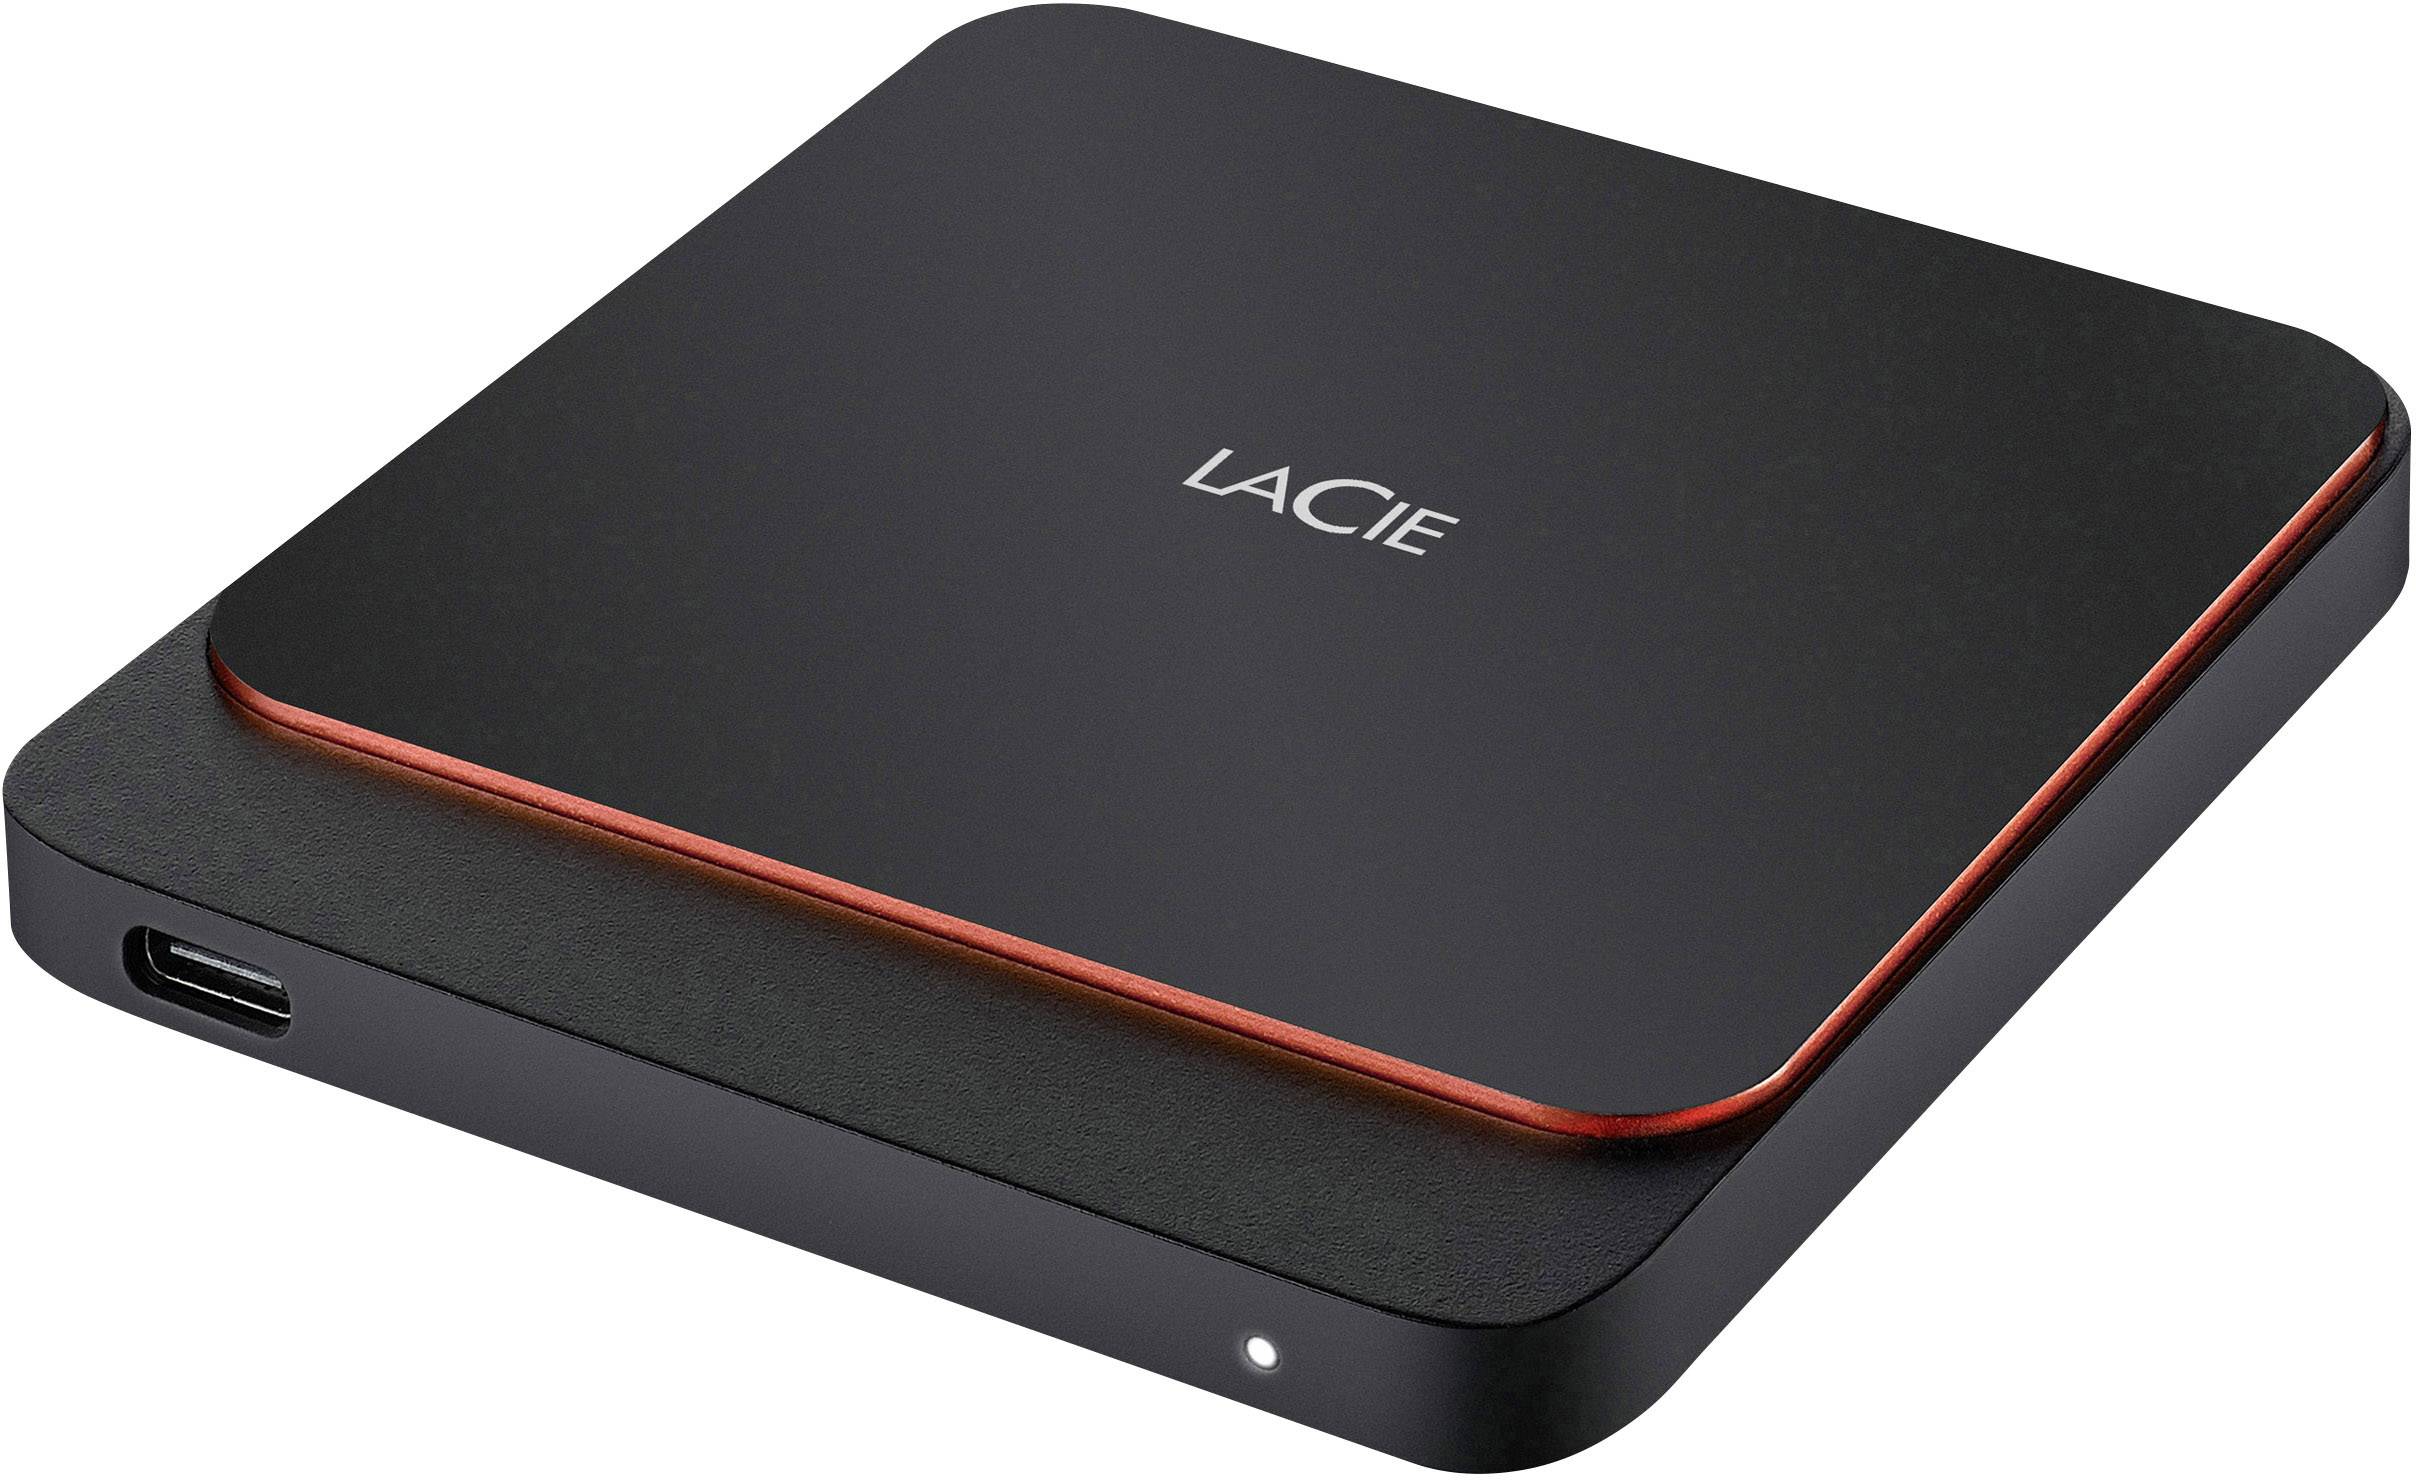 Ссд диск купить 500. Внешний жесткий диск SSD 500 ГБ. Lacie 1tb sthk1000800. Внешний жесткий диск SSD 1 ТБ. SSD 1tb внешний накопитель.